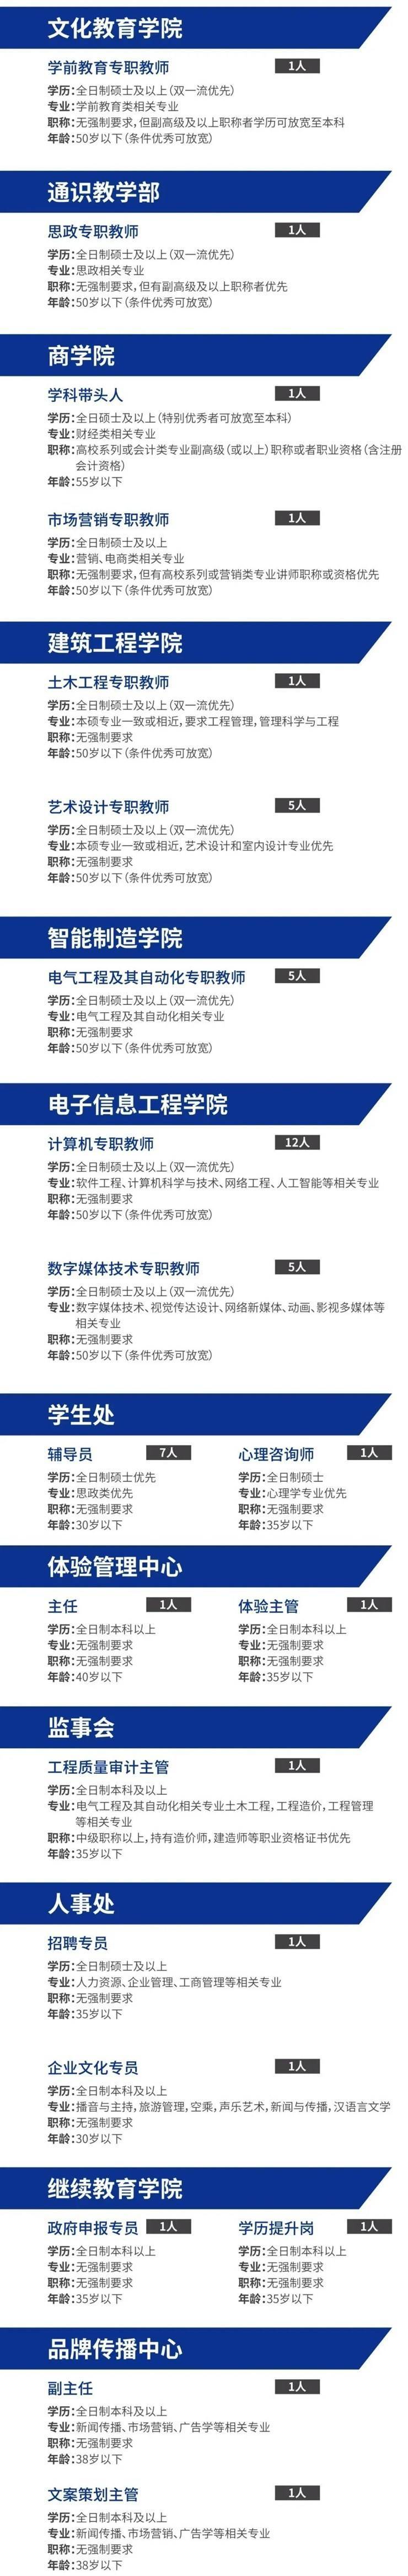 49人！鄭州城市職業學院2022學年招聘公告